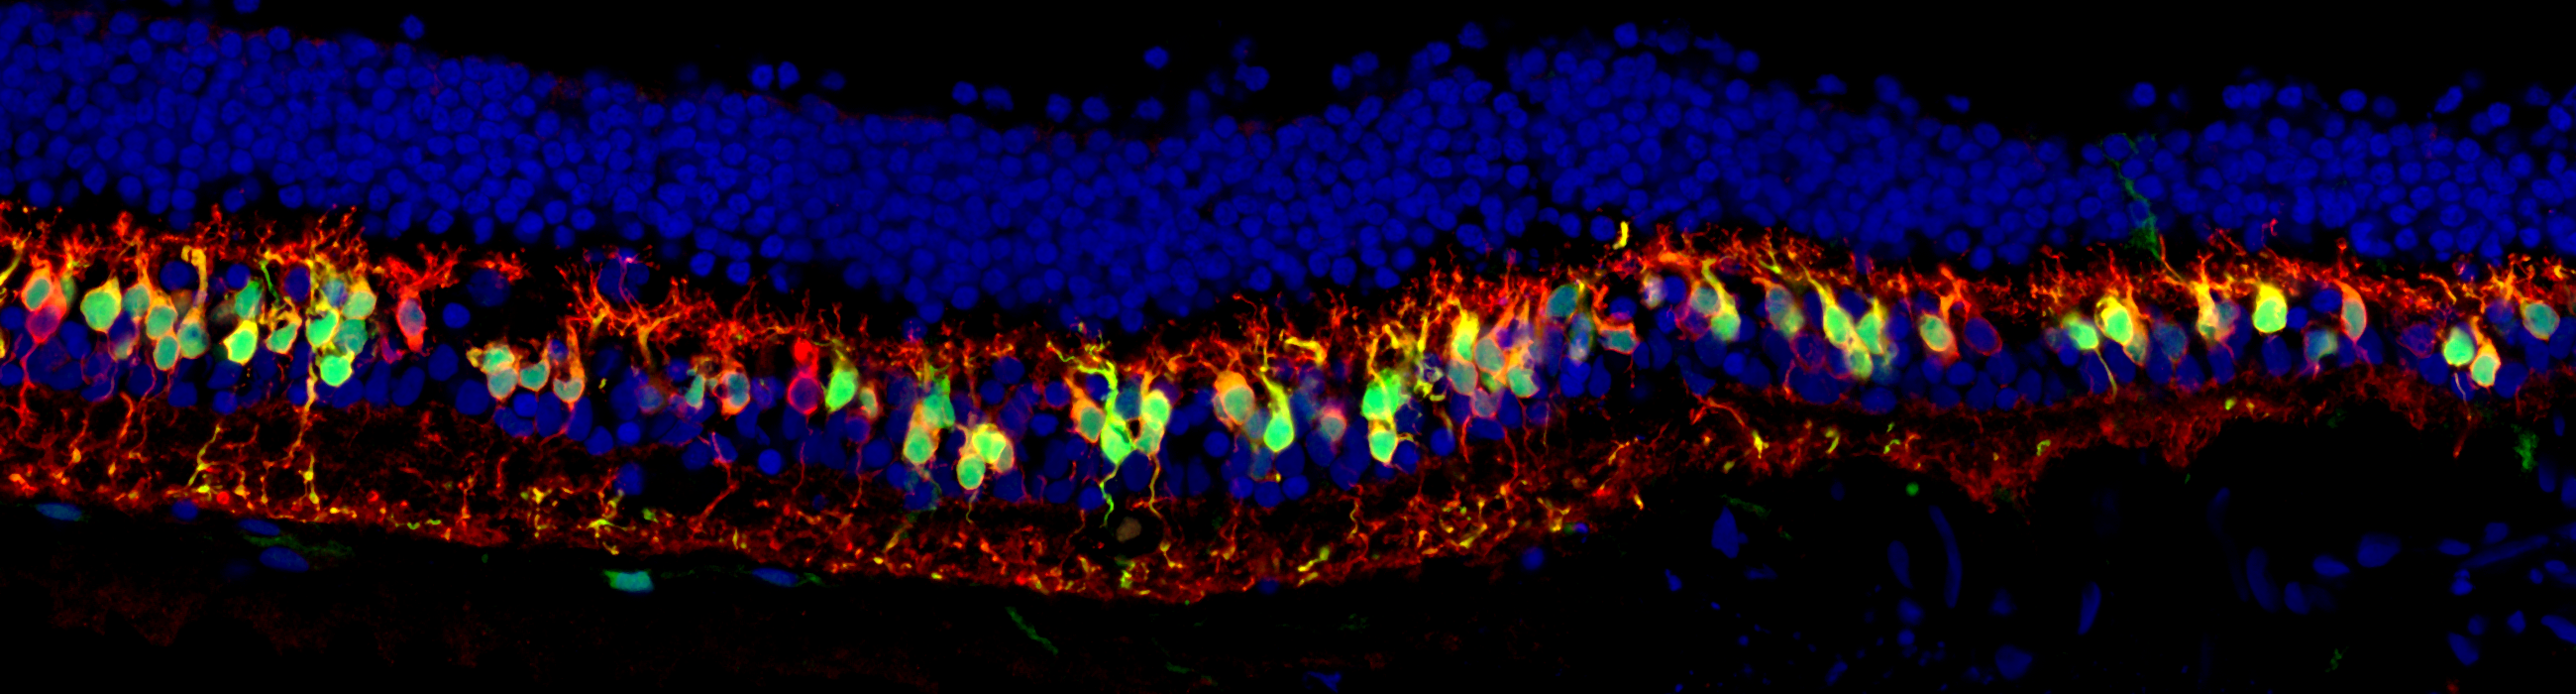 Längsschnitt durch eine humane Netzhaut, die mit einer Opto- mGluR6 behandelt wurde. Die grünen Zellen sind die «neuen» Fotorezeptoren – Nervenzellen der Netzhaut, die durch das Einbringen von Opto-mGluR6 nun Licht wahrnehmen können, so dass auch die blinde Netzhaut wieder «sehen» kann. © zvg